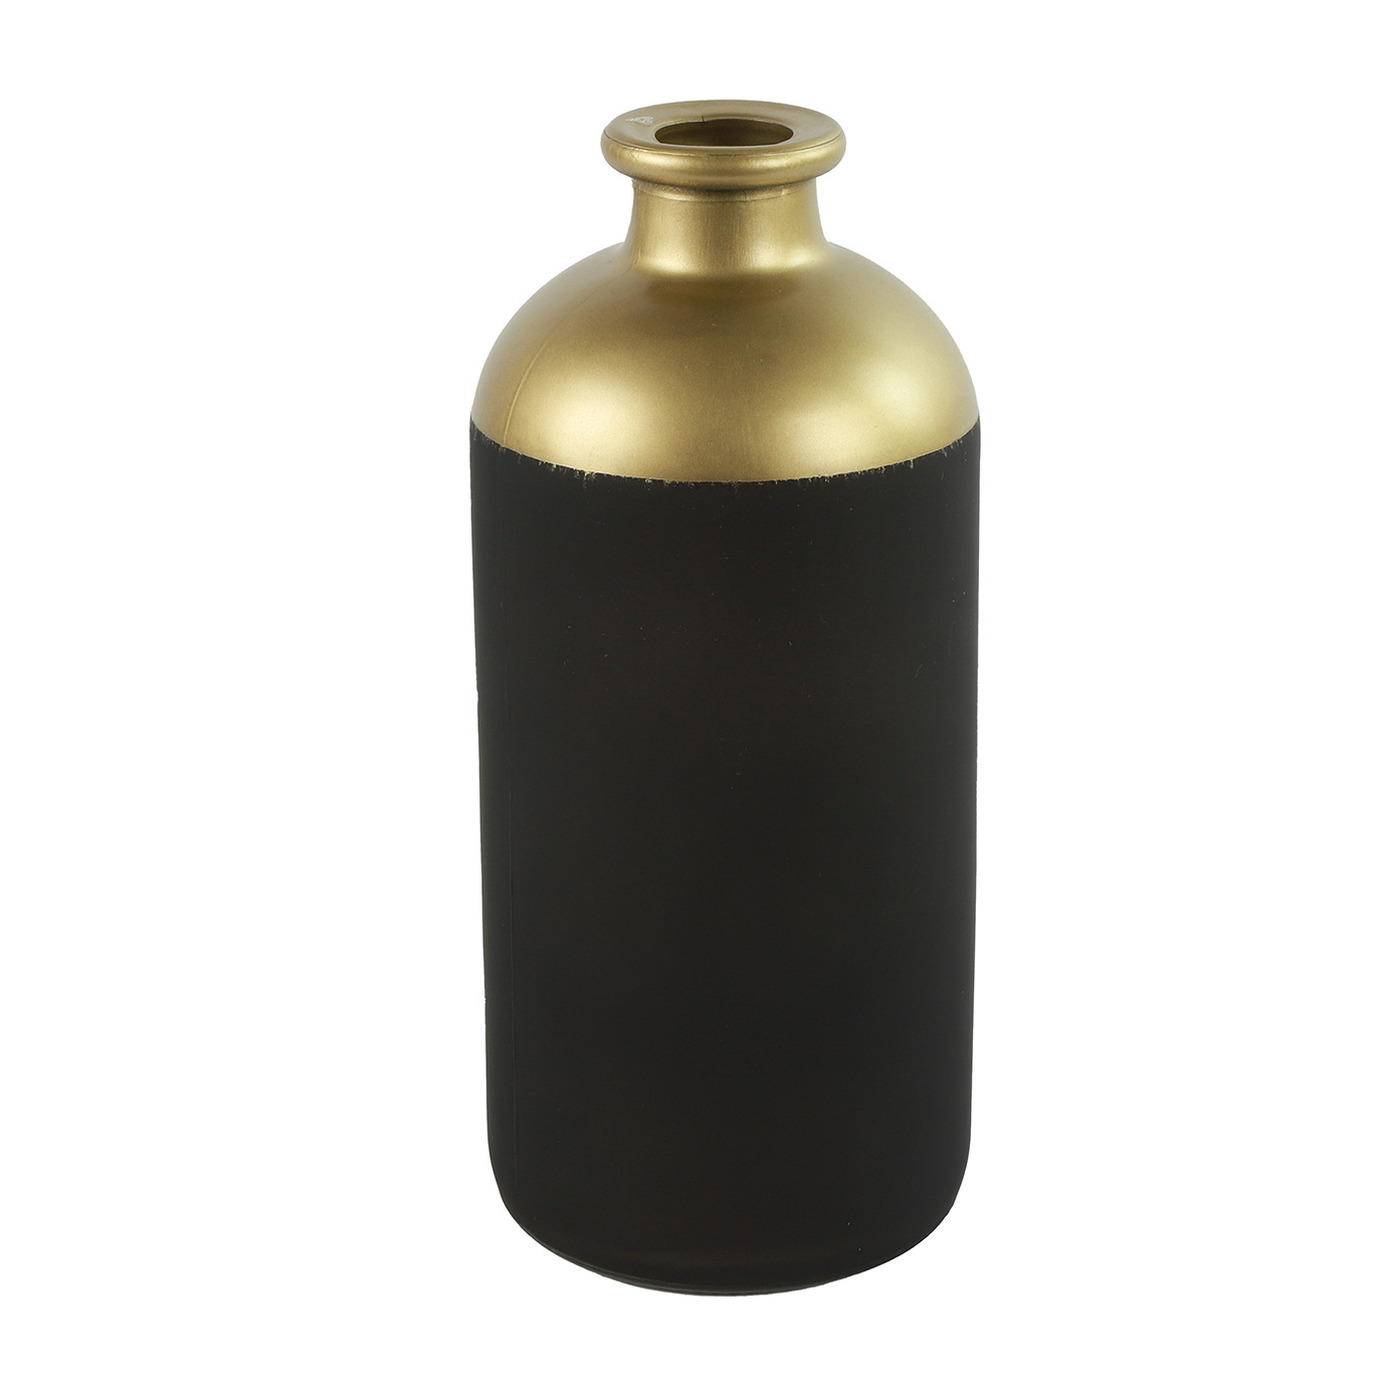 Countryfield Bloemen of deco vaas zwart-goud glas luxe fles vorm D11 x H25 cm